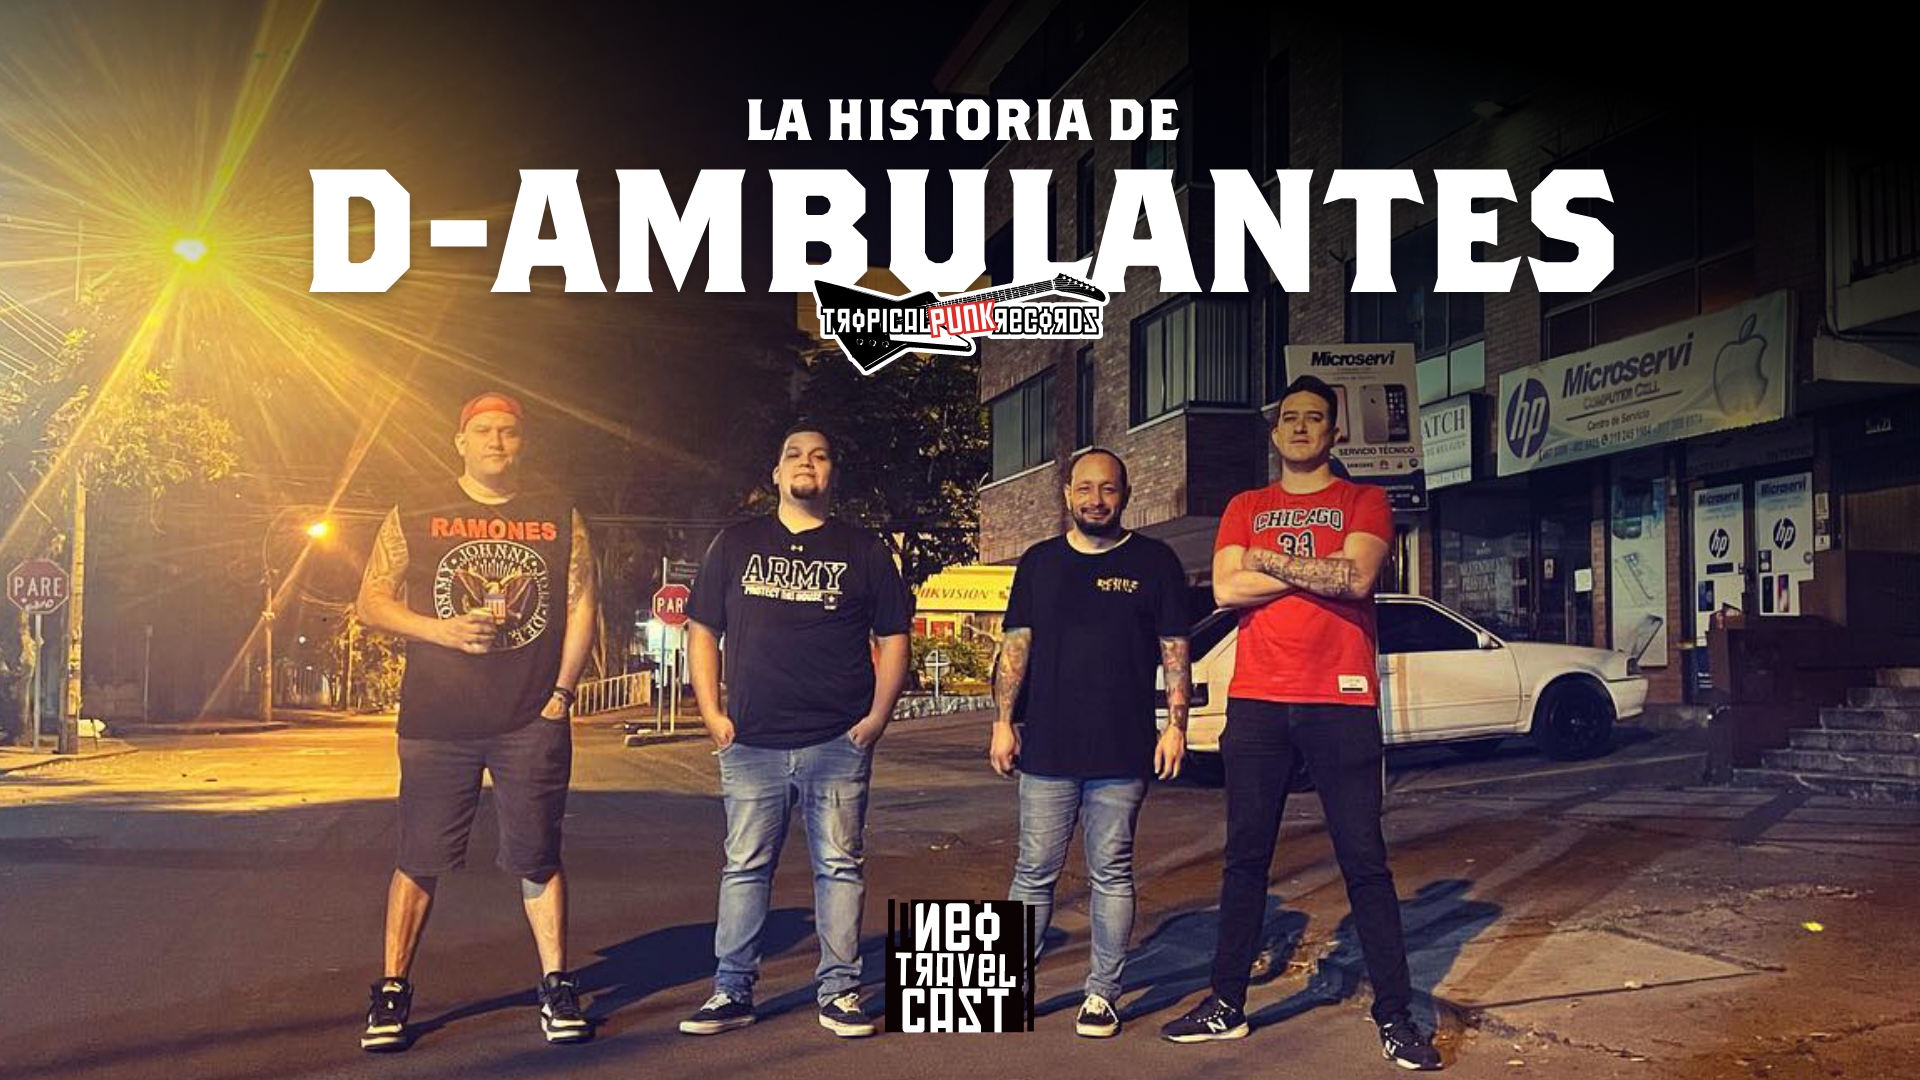 D'Ambulantes se formó en la ciudad de Cali, Colombia, en la década de 2000. Desde entonces, han dejado una huella profunda en la escena punk rock latinoamericana. Conóce su historia en el Neo Travel Cast, un podcast de Tropical Punk Records.